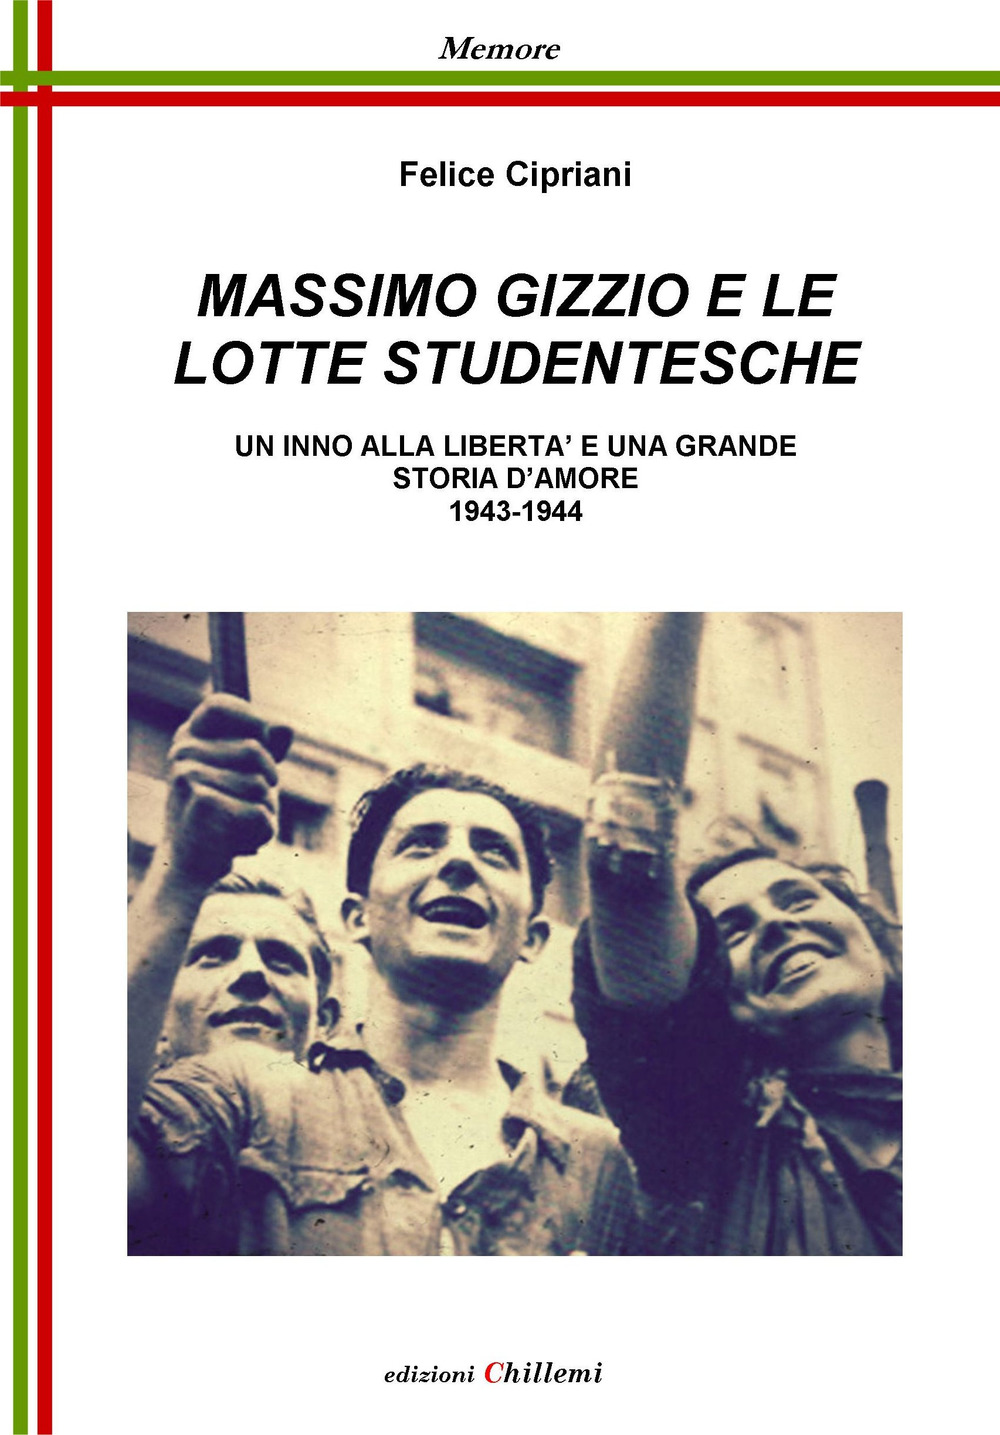 Massimo Gizzio e le lotte studentesche. Un inno alla libertà e una grande storia d'amore 1943-1944